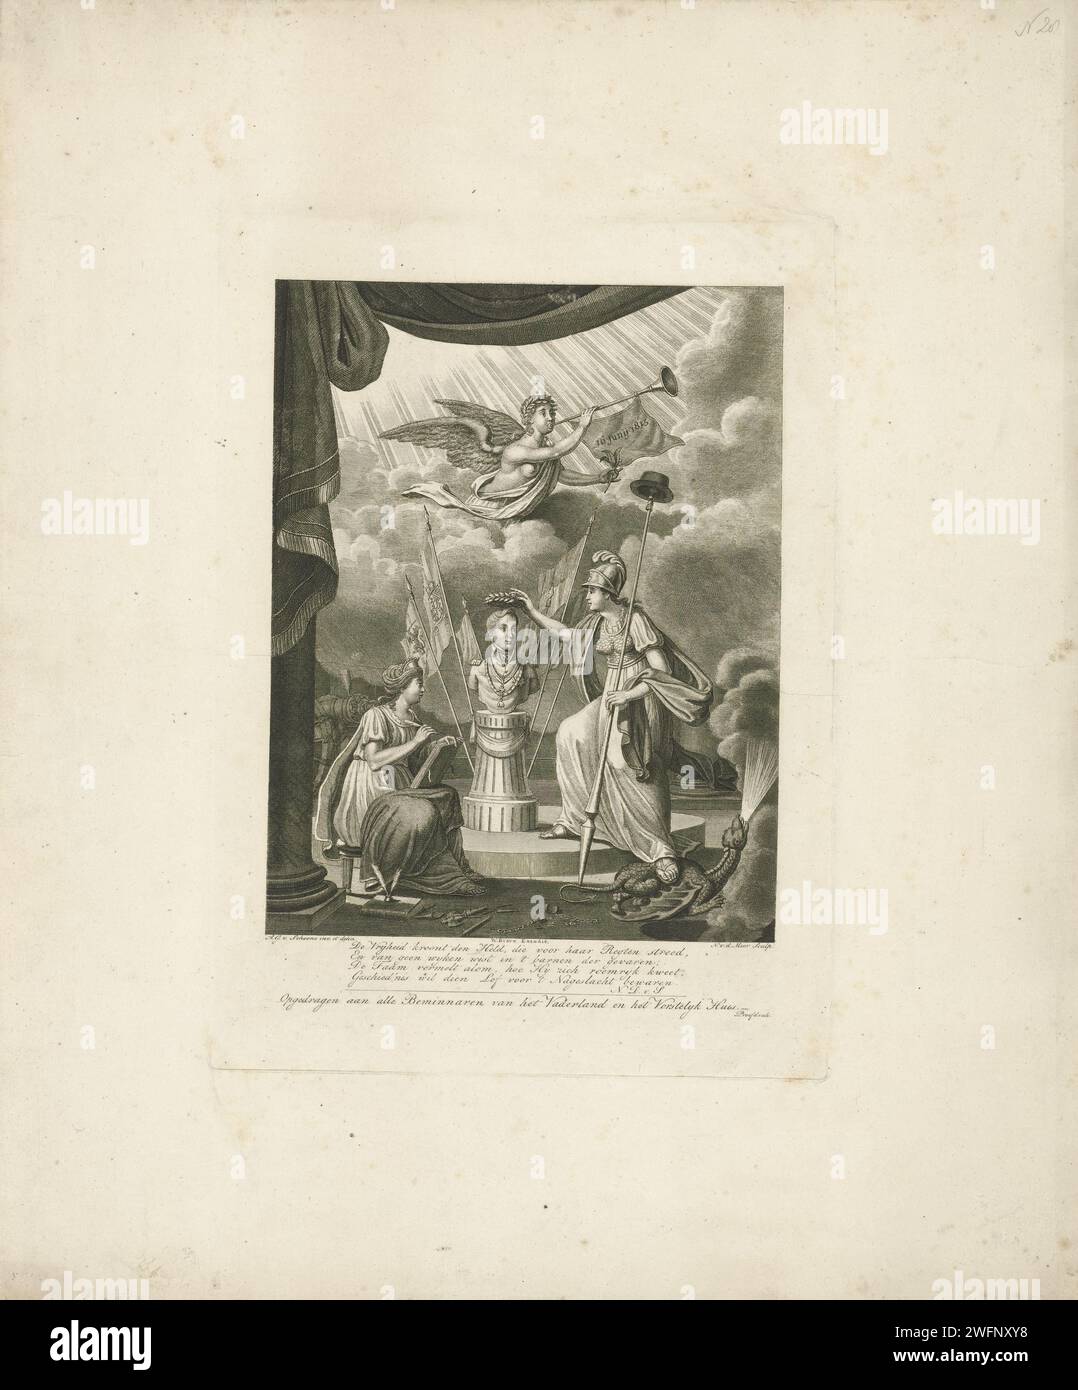 La Vergine olandese incorona il busto del principe ereditario Willem II, Noah van der Meer (II), dopo Adrianus Gerardus van Schoone, 1815 stampa la Vergine olandese, in piedi sul mostro del Dwingelandij e con la lancia della libertà in mano, lodare un busto del principe ereditario Guglielmo II d'Orange. Accanto al busto c'è la storia, che registra le gesta eroiche del principe. La fama soffia l'elogio, su cui è appeso uno striscione con la data della battaglia di Quatre-Bras. Nella parte inferiore del margine un verso a quattro righe e l'assegnazione. Carta di Amsterdam che incide personaggi storici (ritratti e scene della vita) Foto Stock